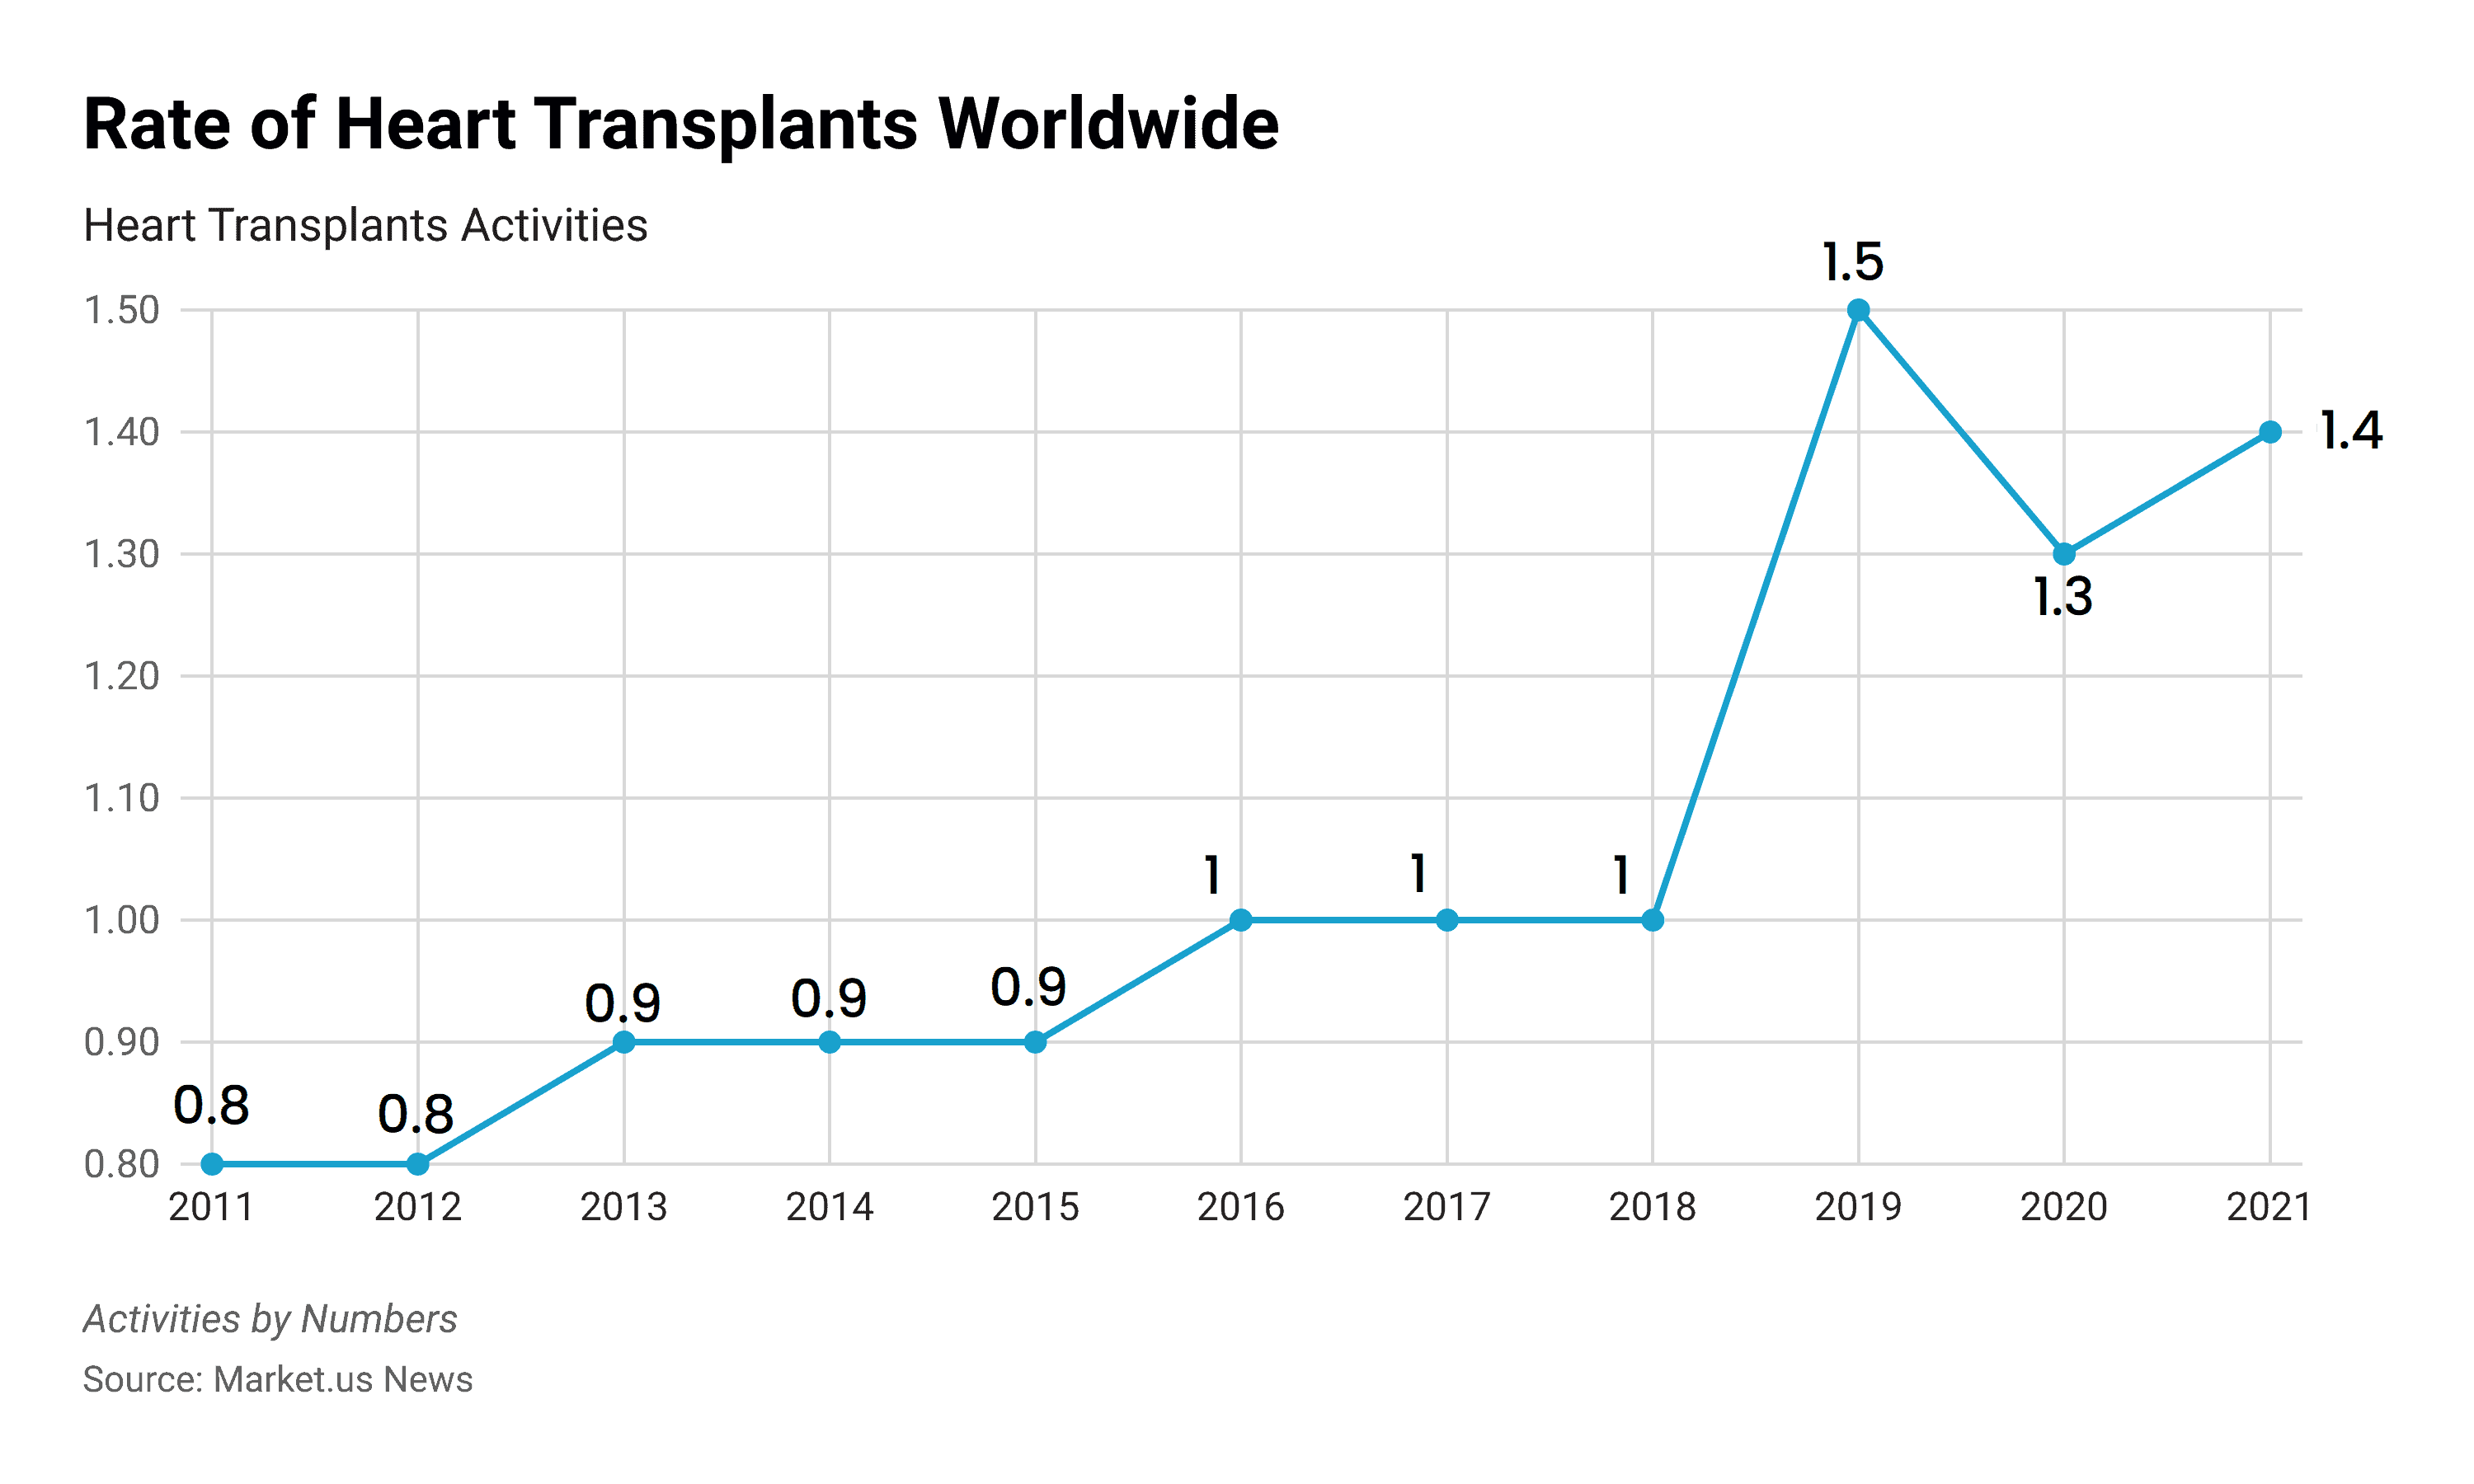 Organ Transplantation Statistics